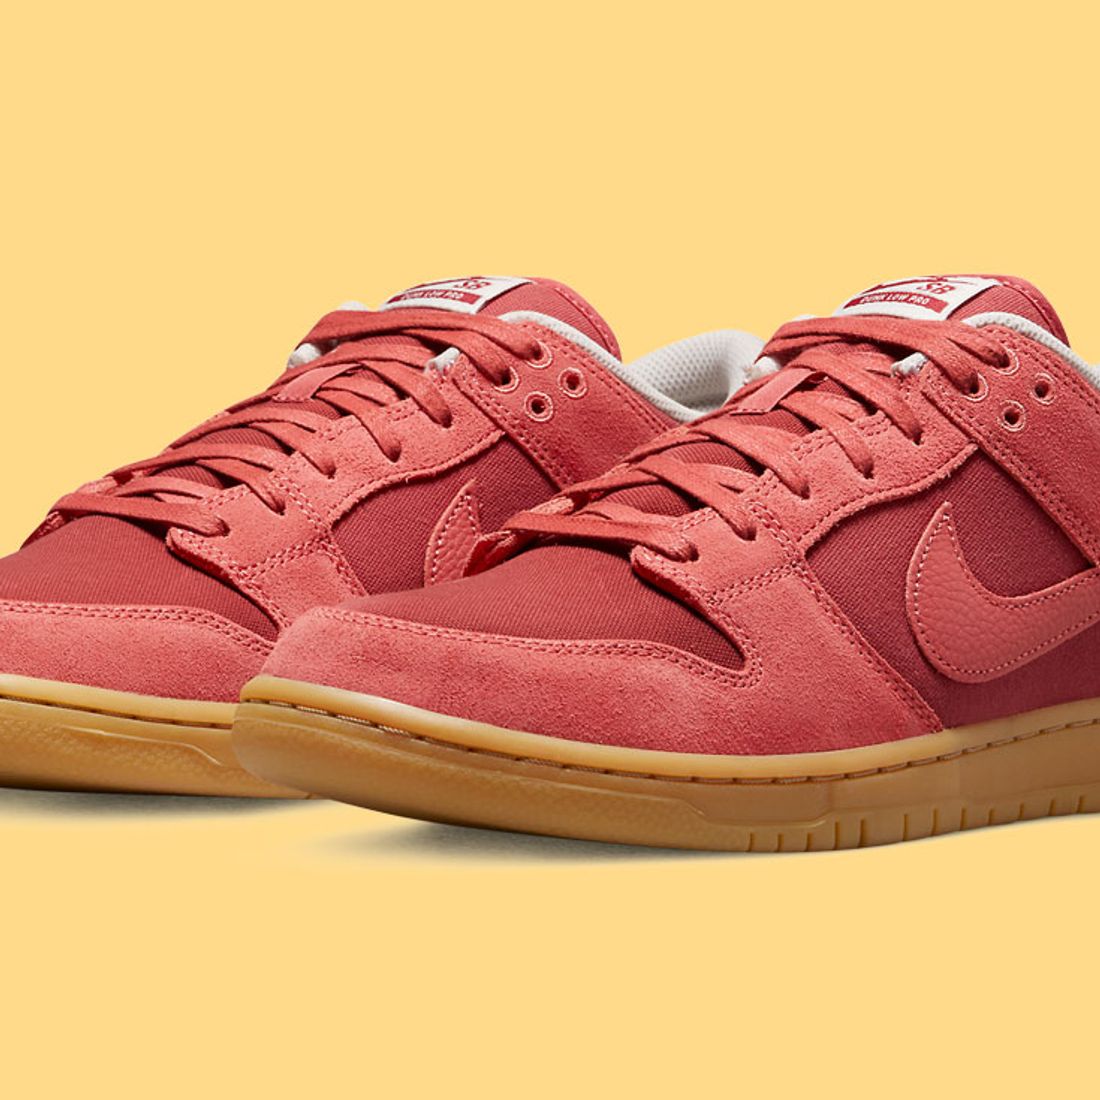 Release Date! Nike SB Dunk Low 'Red Gum' aka 'Adobe' - Sneaker Freaker